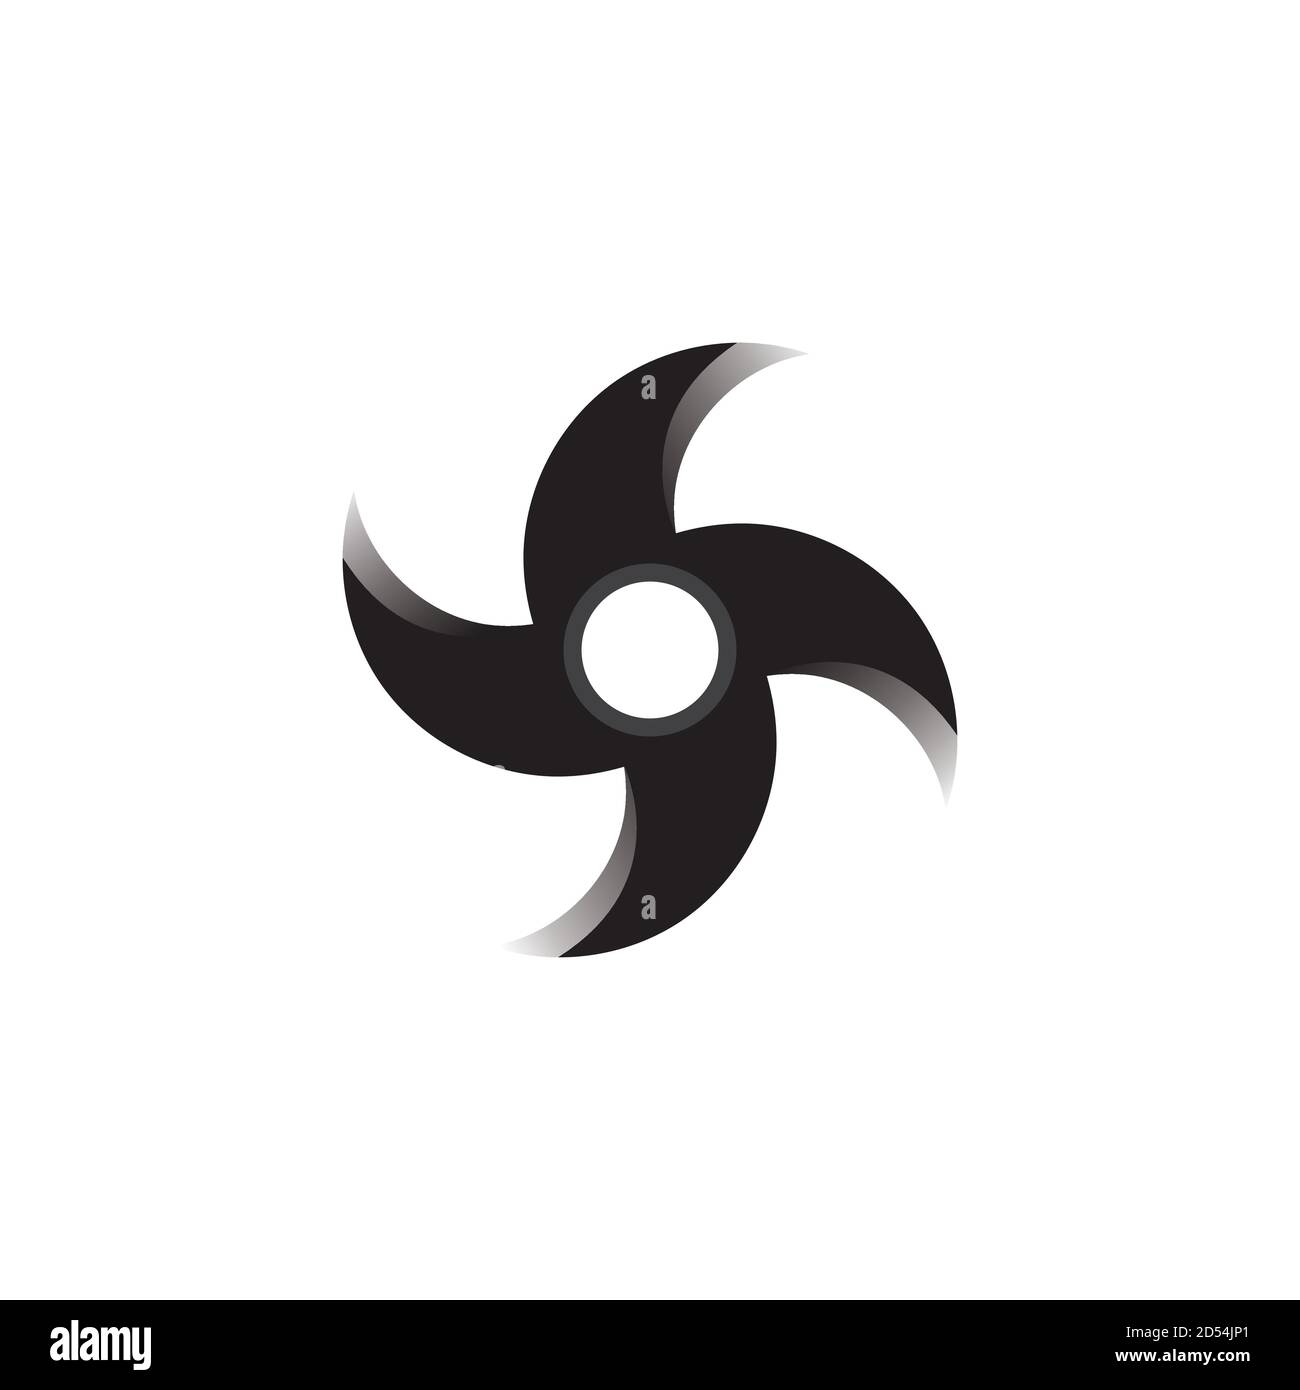 ninjutsu symbol